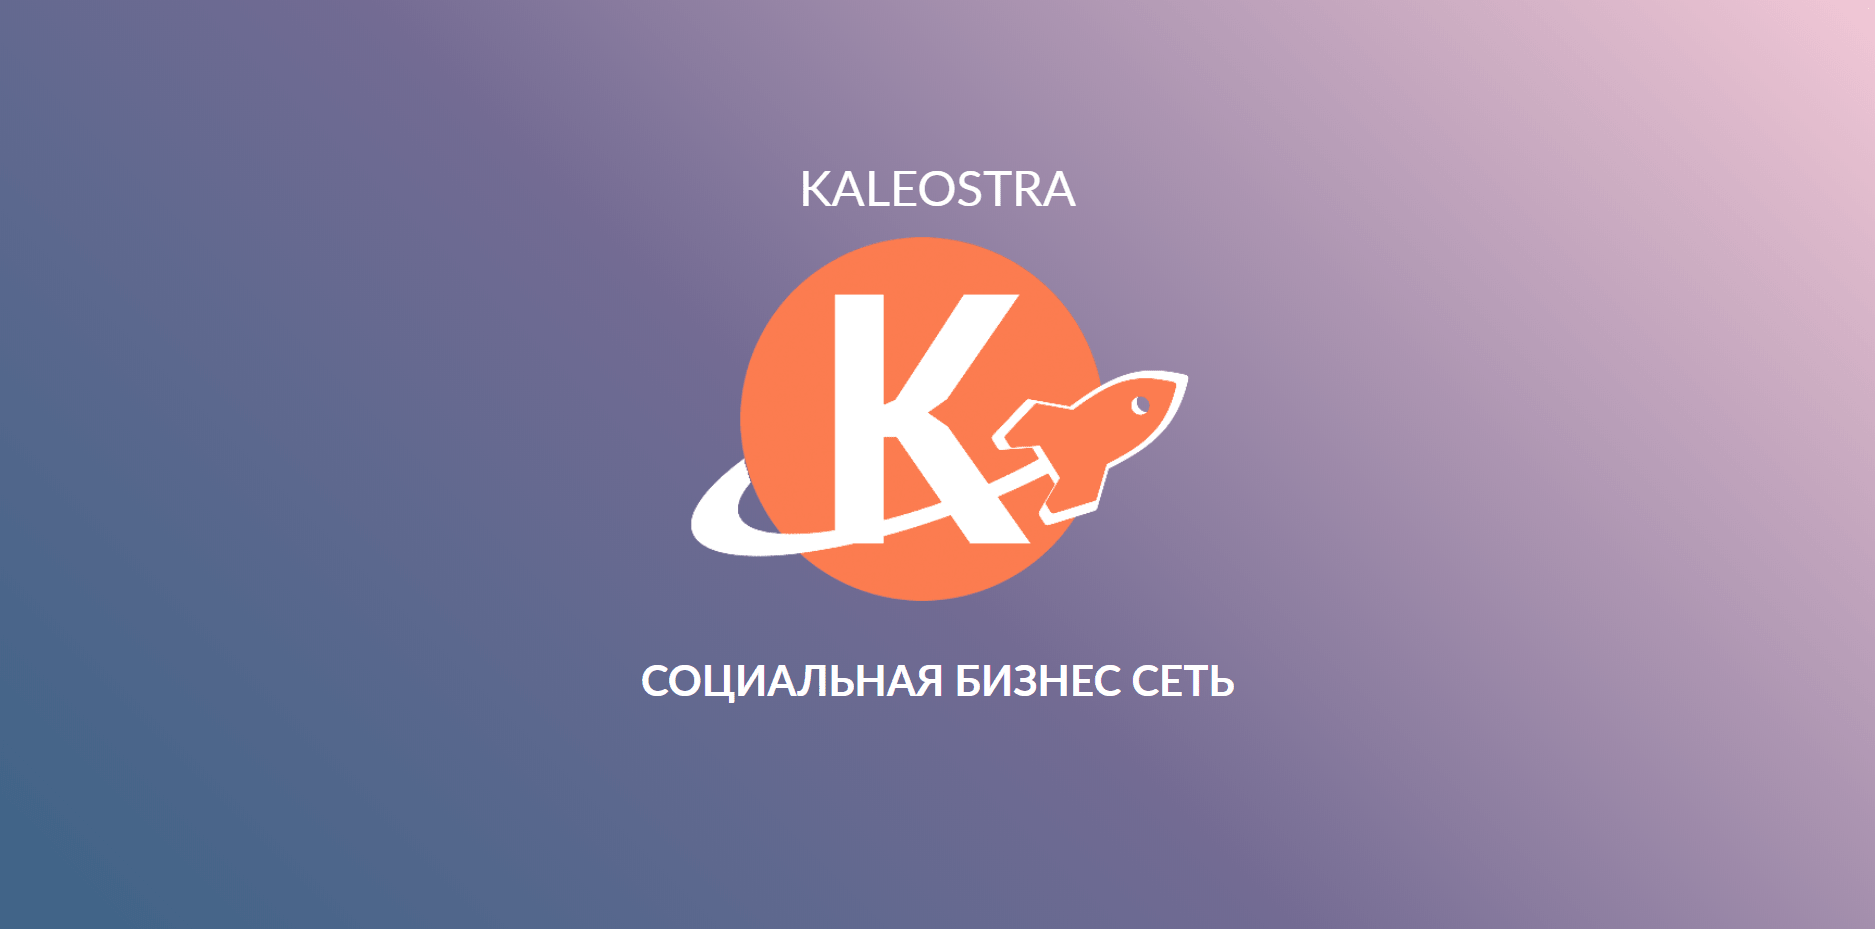 Kaleostra социальная бизнес сеть - Александр К-в